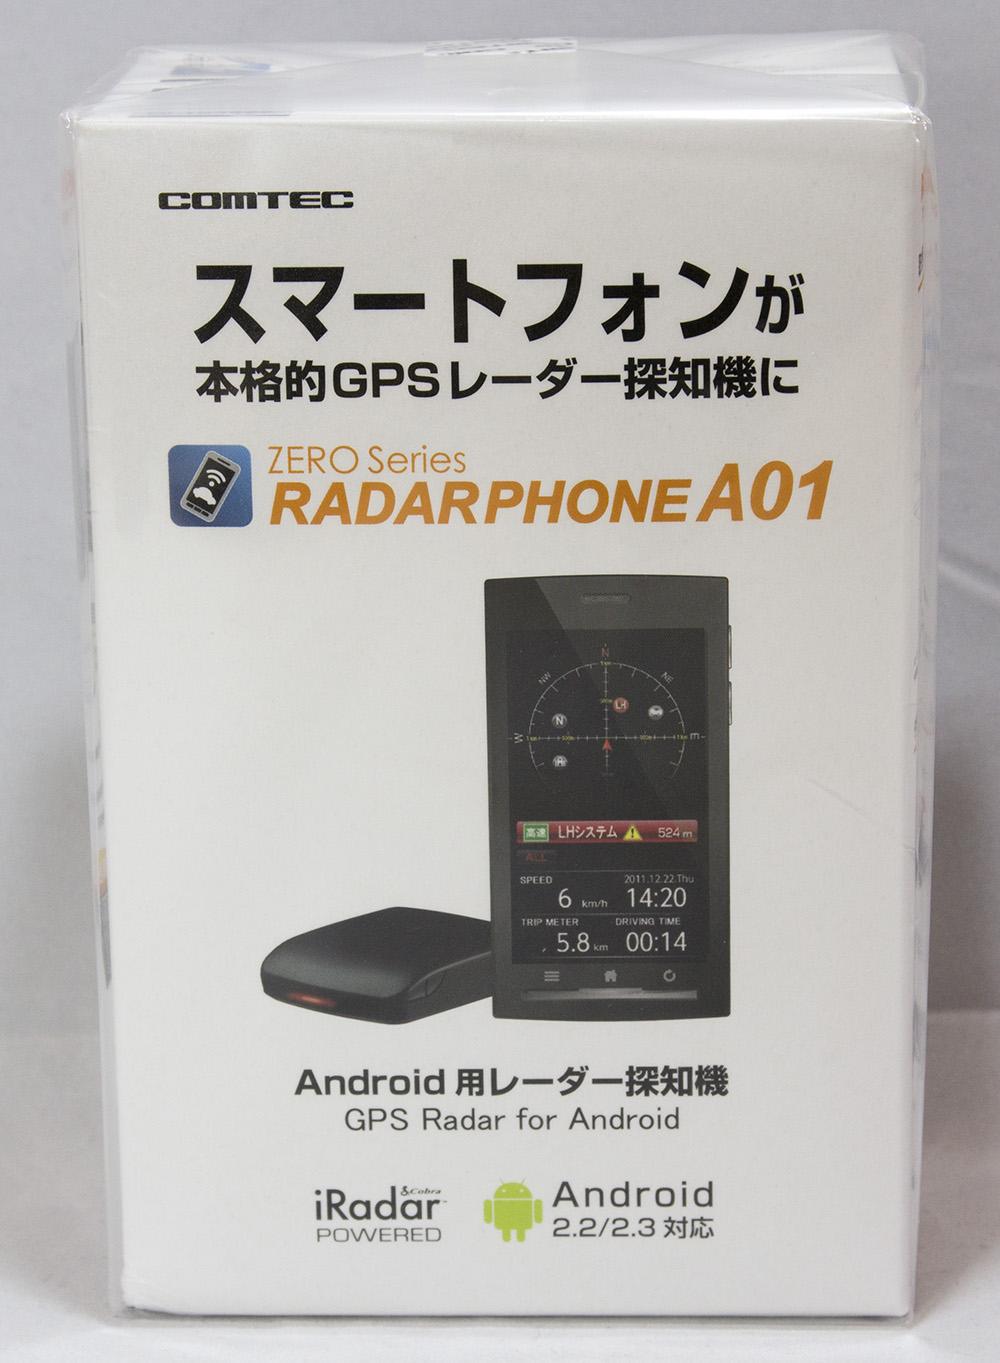 Android端末と連携する事でより高機能になるレーダー探知機 Android用レーダー探知機 Radarphone A01のレビュー ジグソー レビューメディア